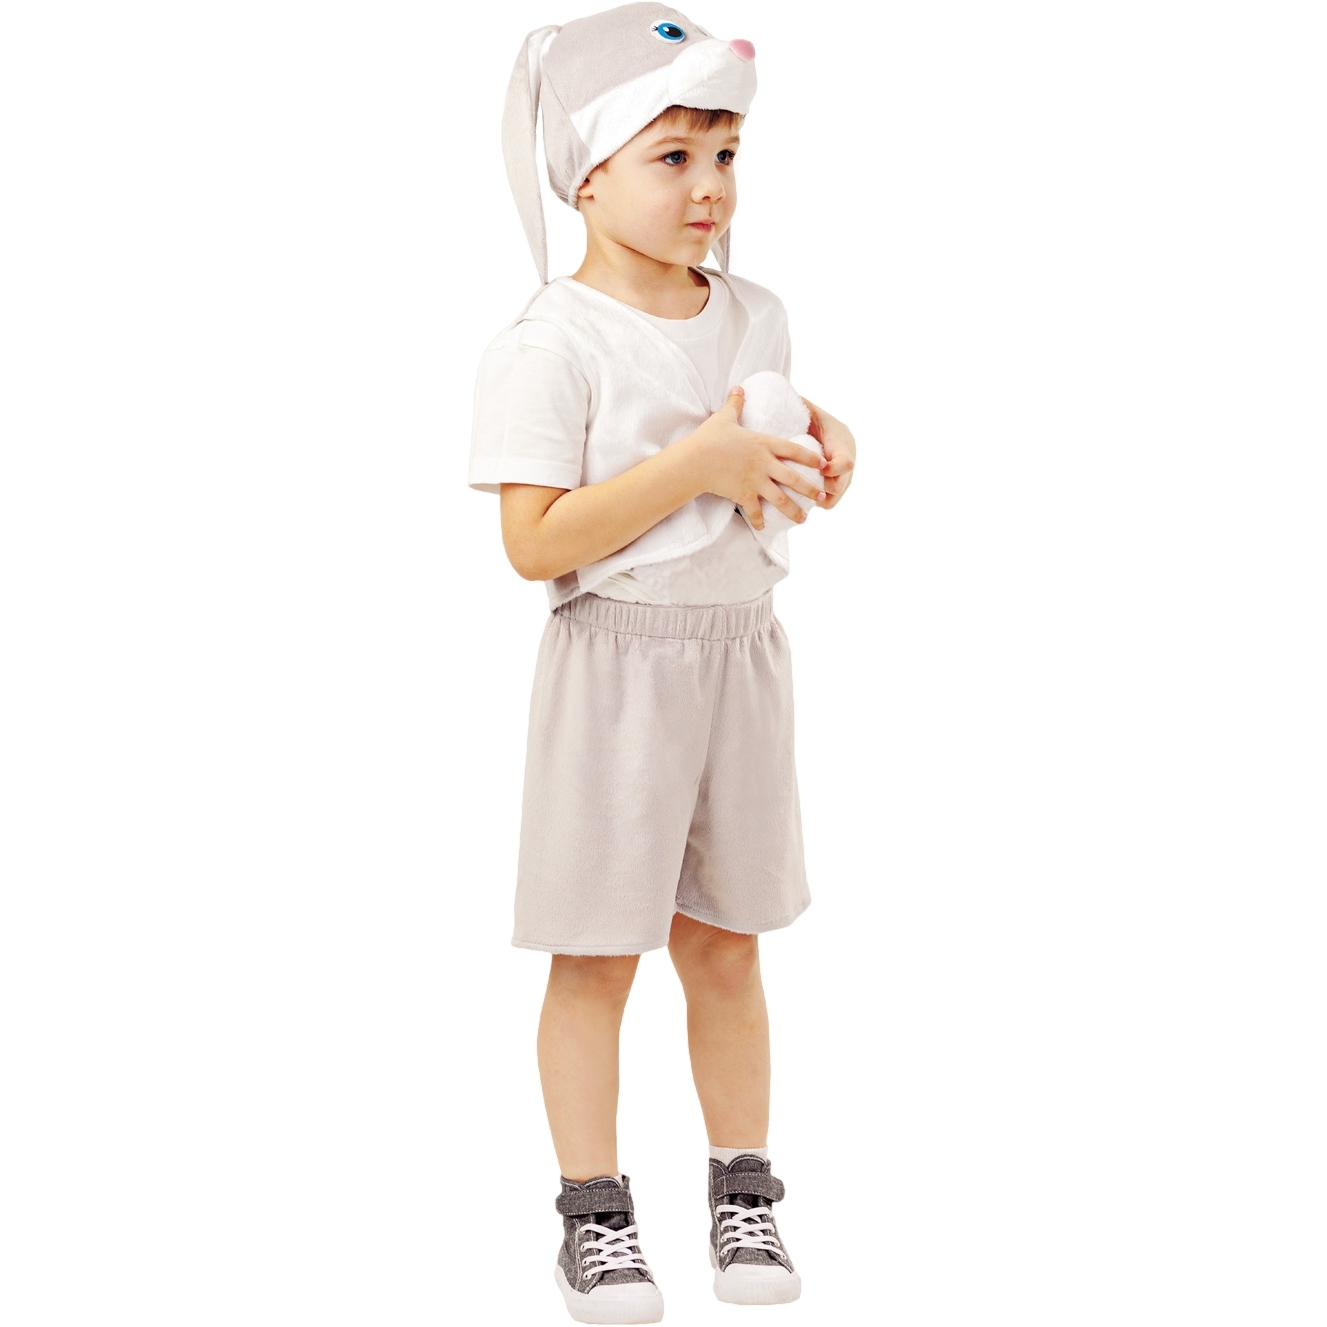 Карнавальный костюм "Заяц серый Прошка" (жилет, шорты, шапка) размер 110-56